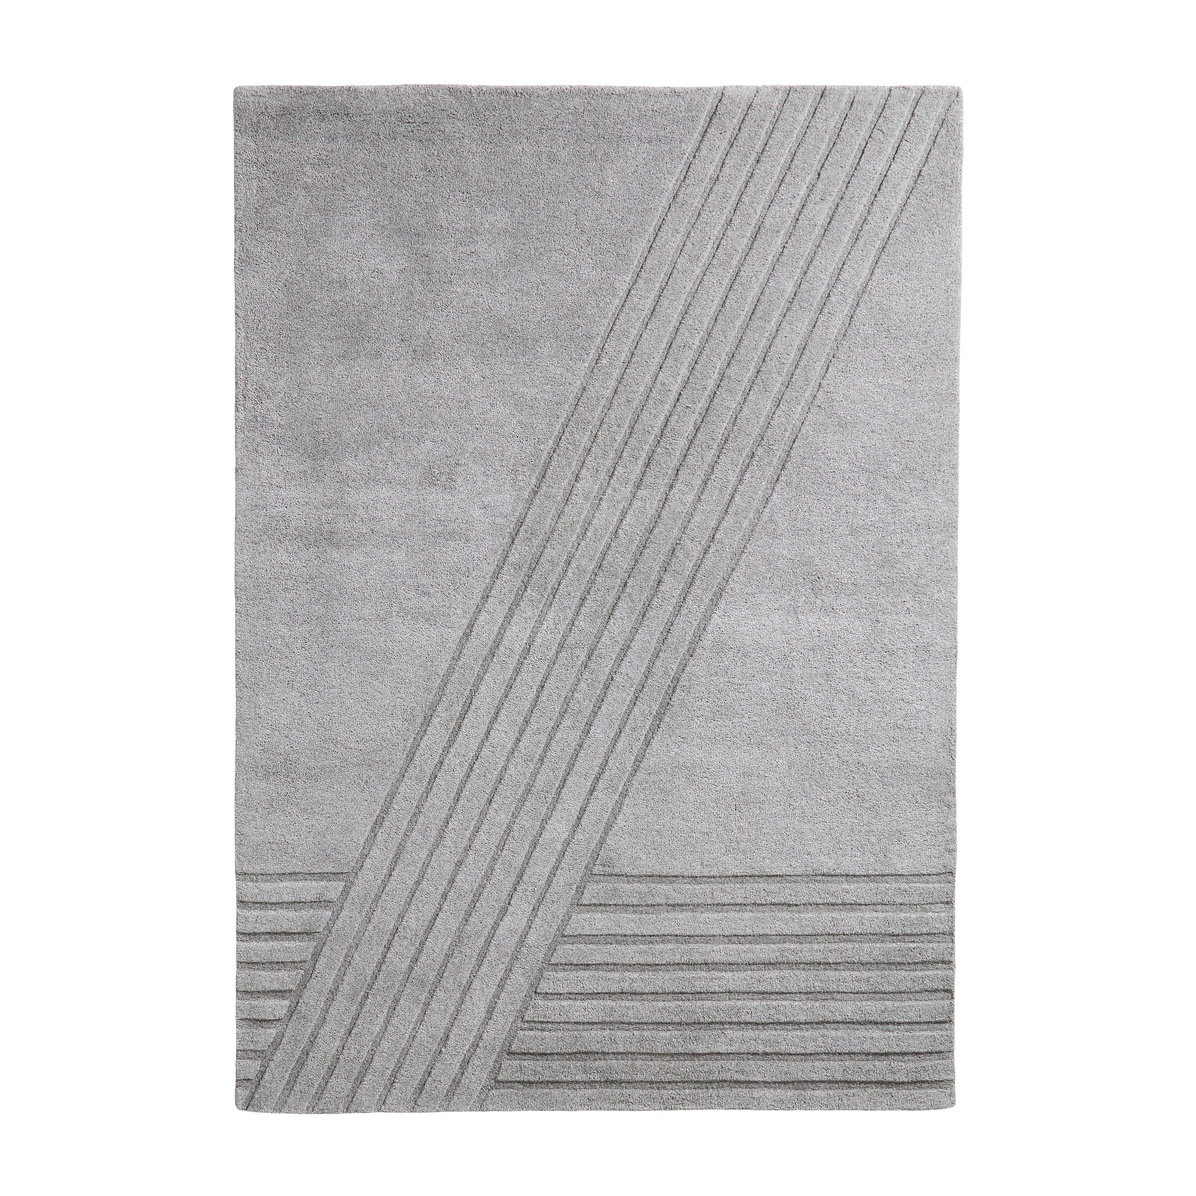 Woud Kyoto vloerkleed grijs 170x240 cm